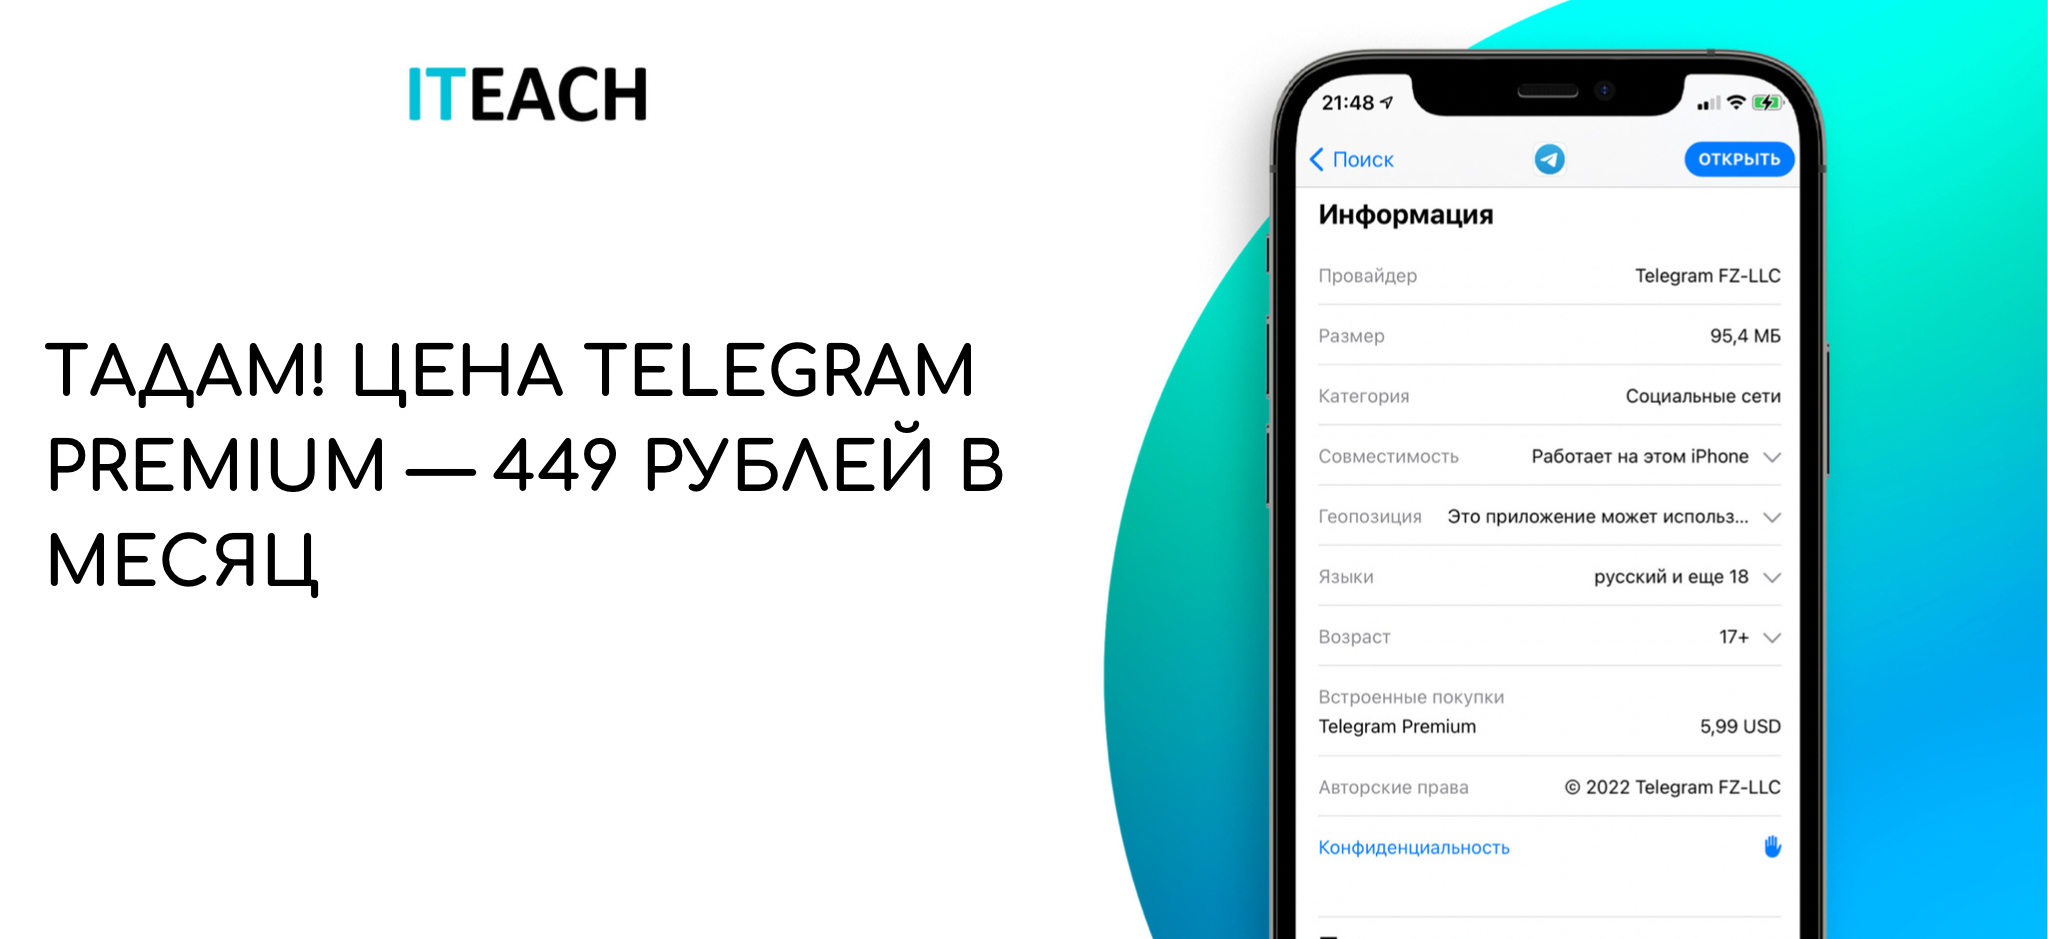 Телеграмм премиум скачать бесплатно андроид последняя версия без вирусов полную на русском языке фото 81